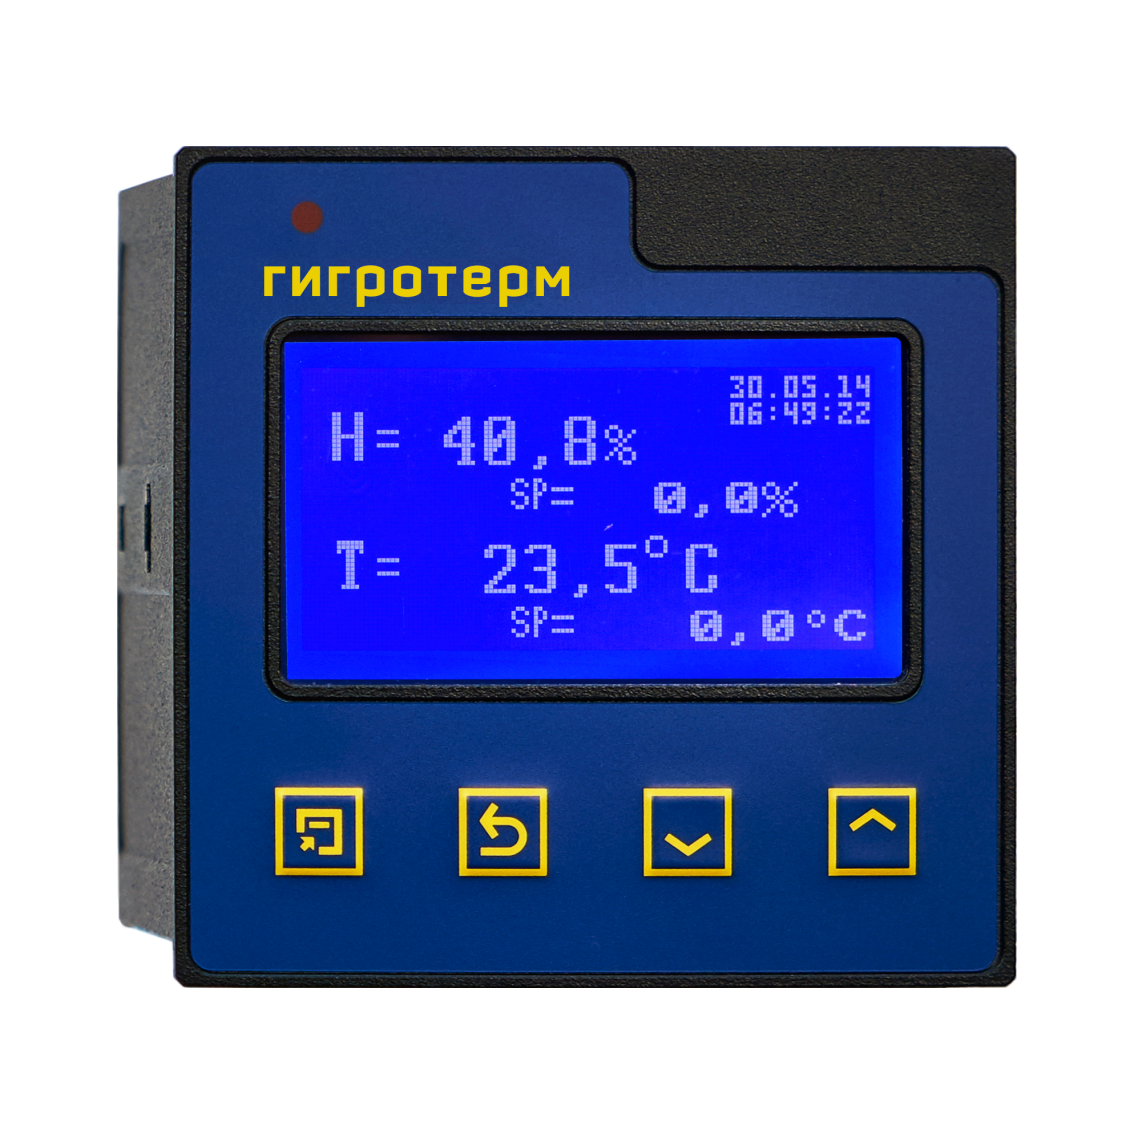 Мерадат-М38Е6 Одноканальный измеритель-регулятор температуры и влажности